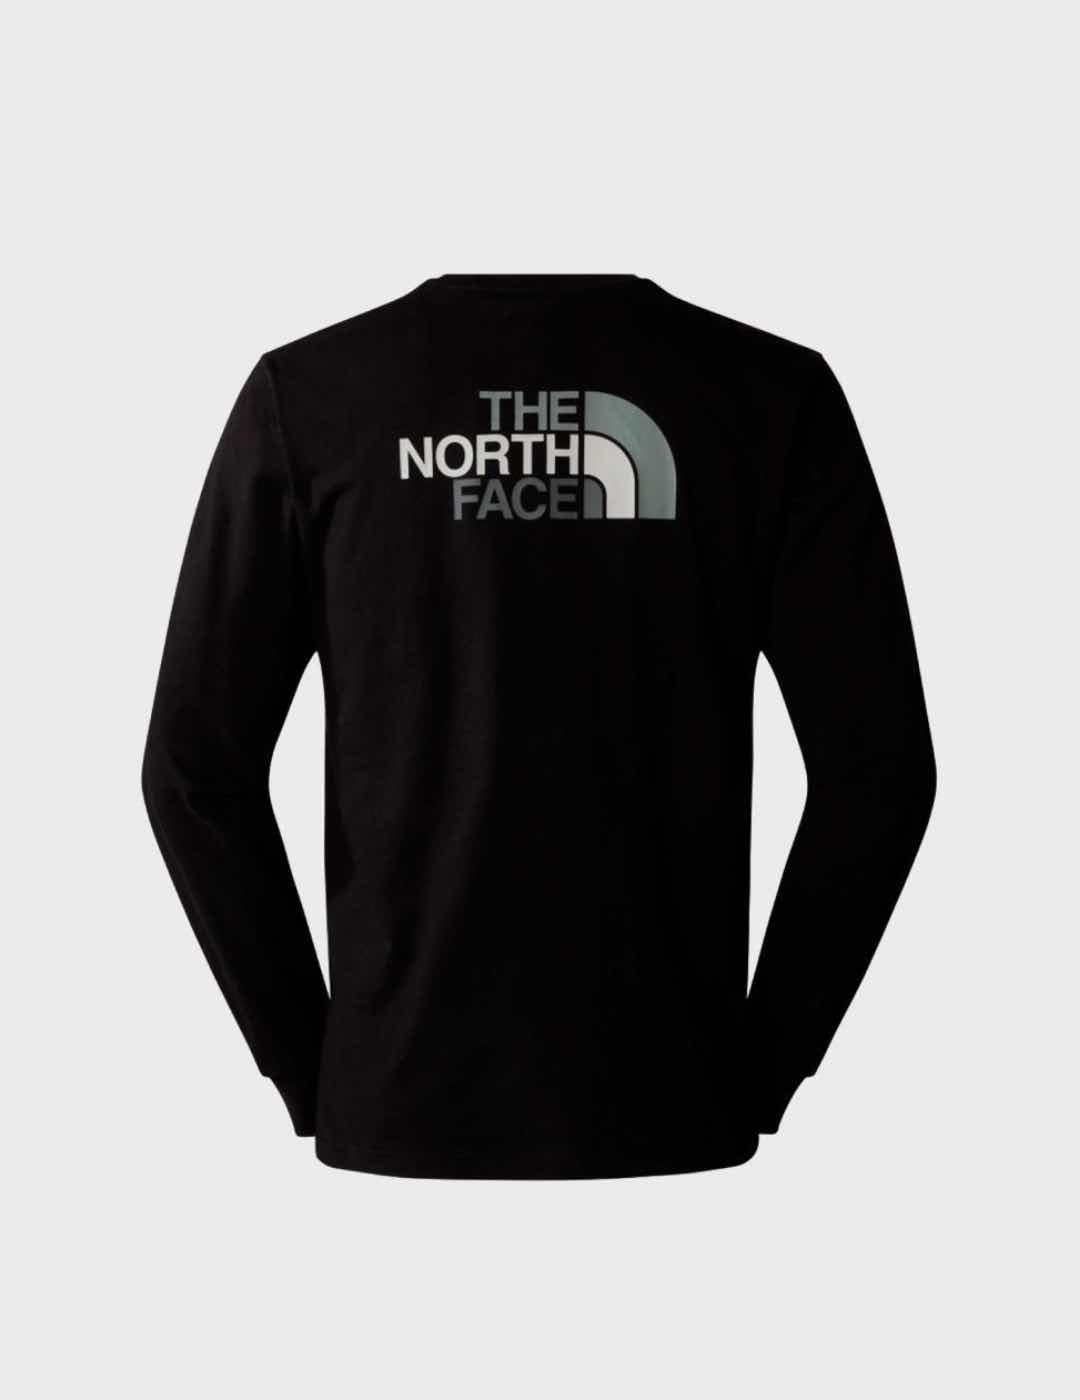 Camiseta The North face M L/S Easy Black/Grey